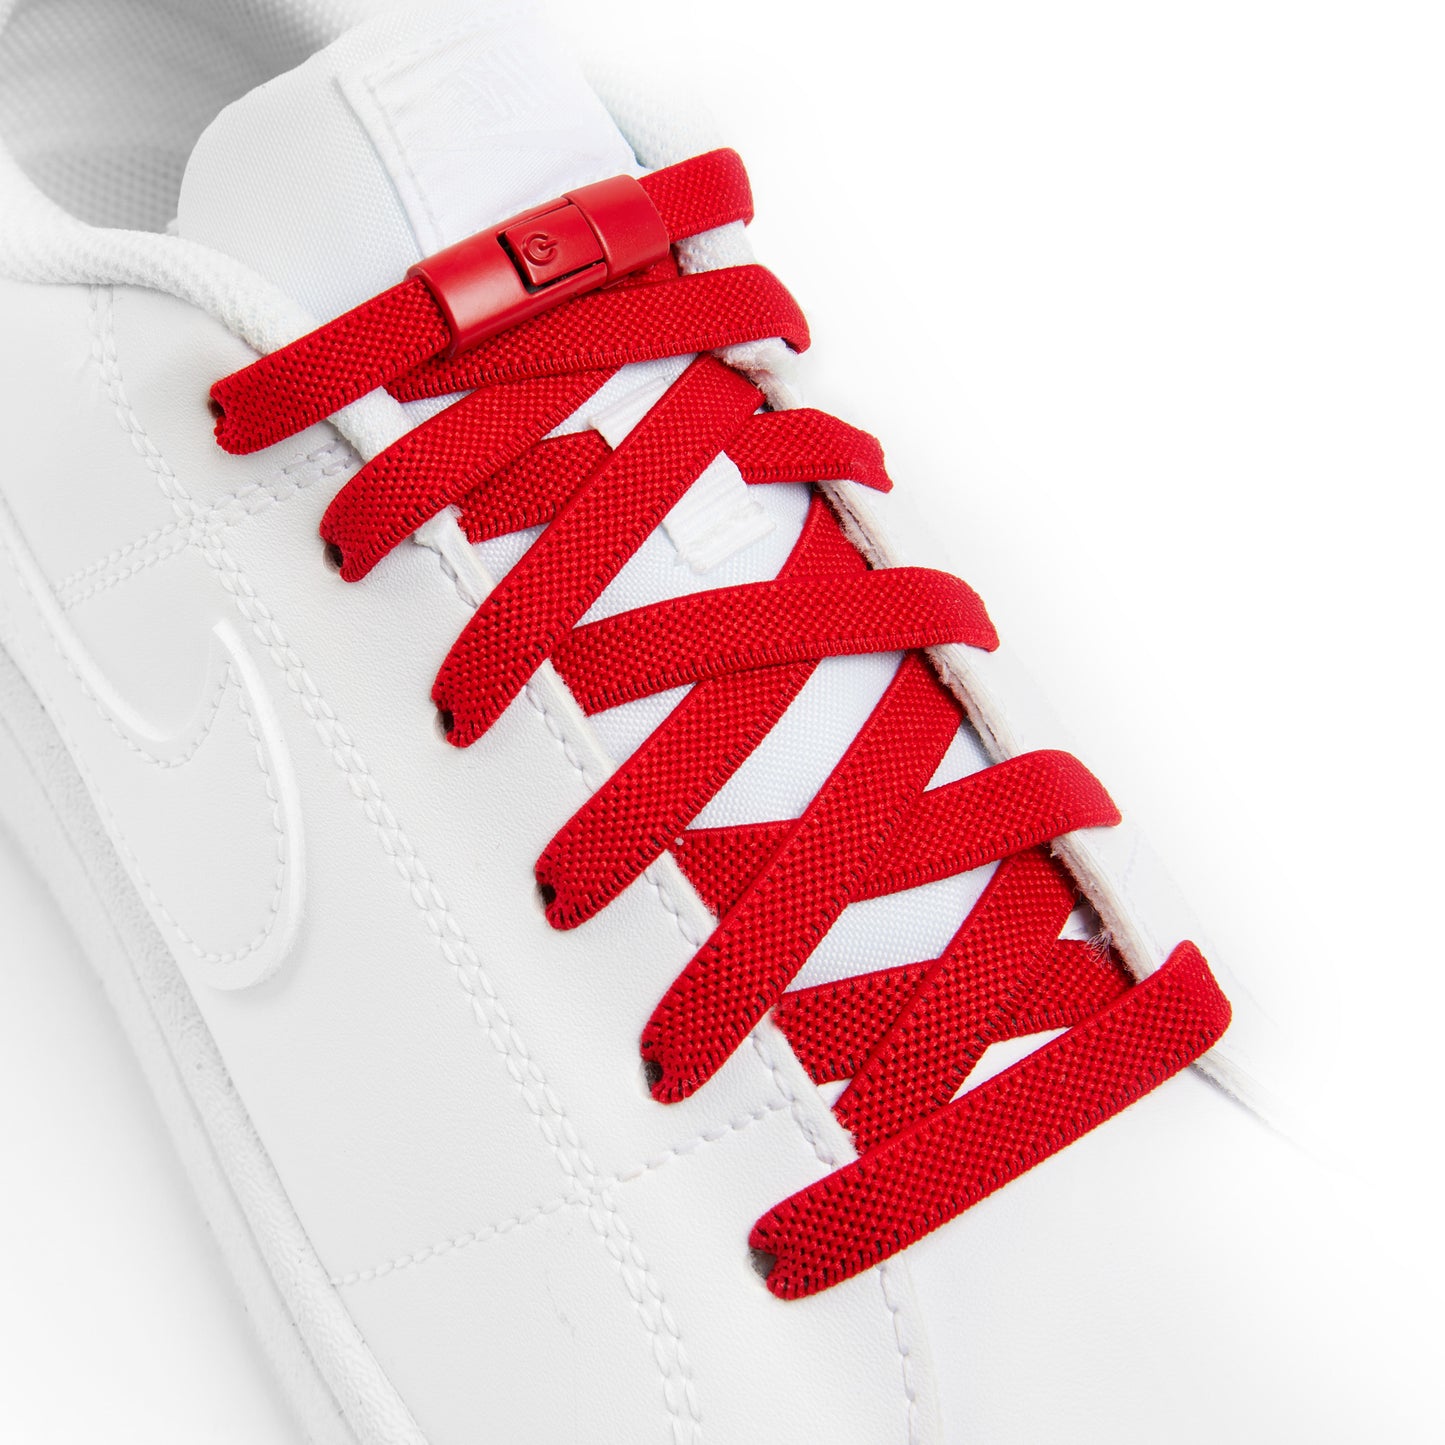 Red Original No-Tie Shoe Laces